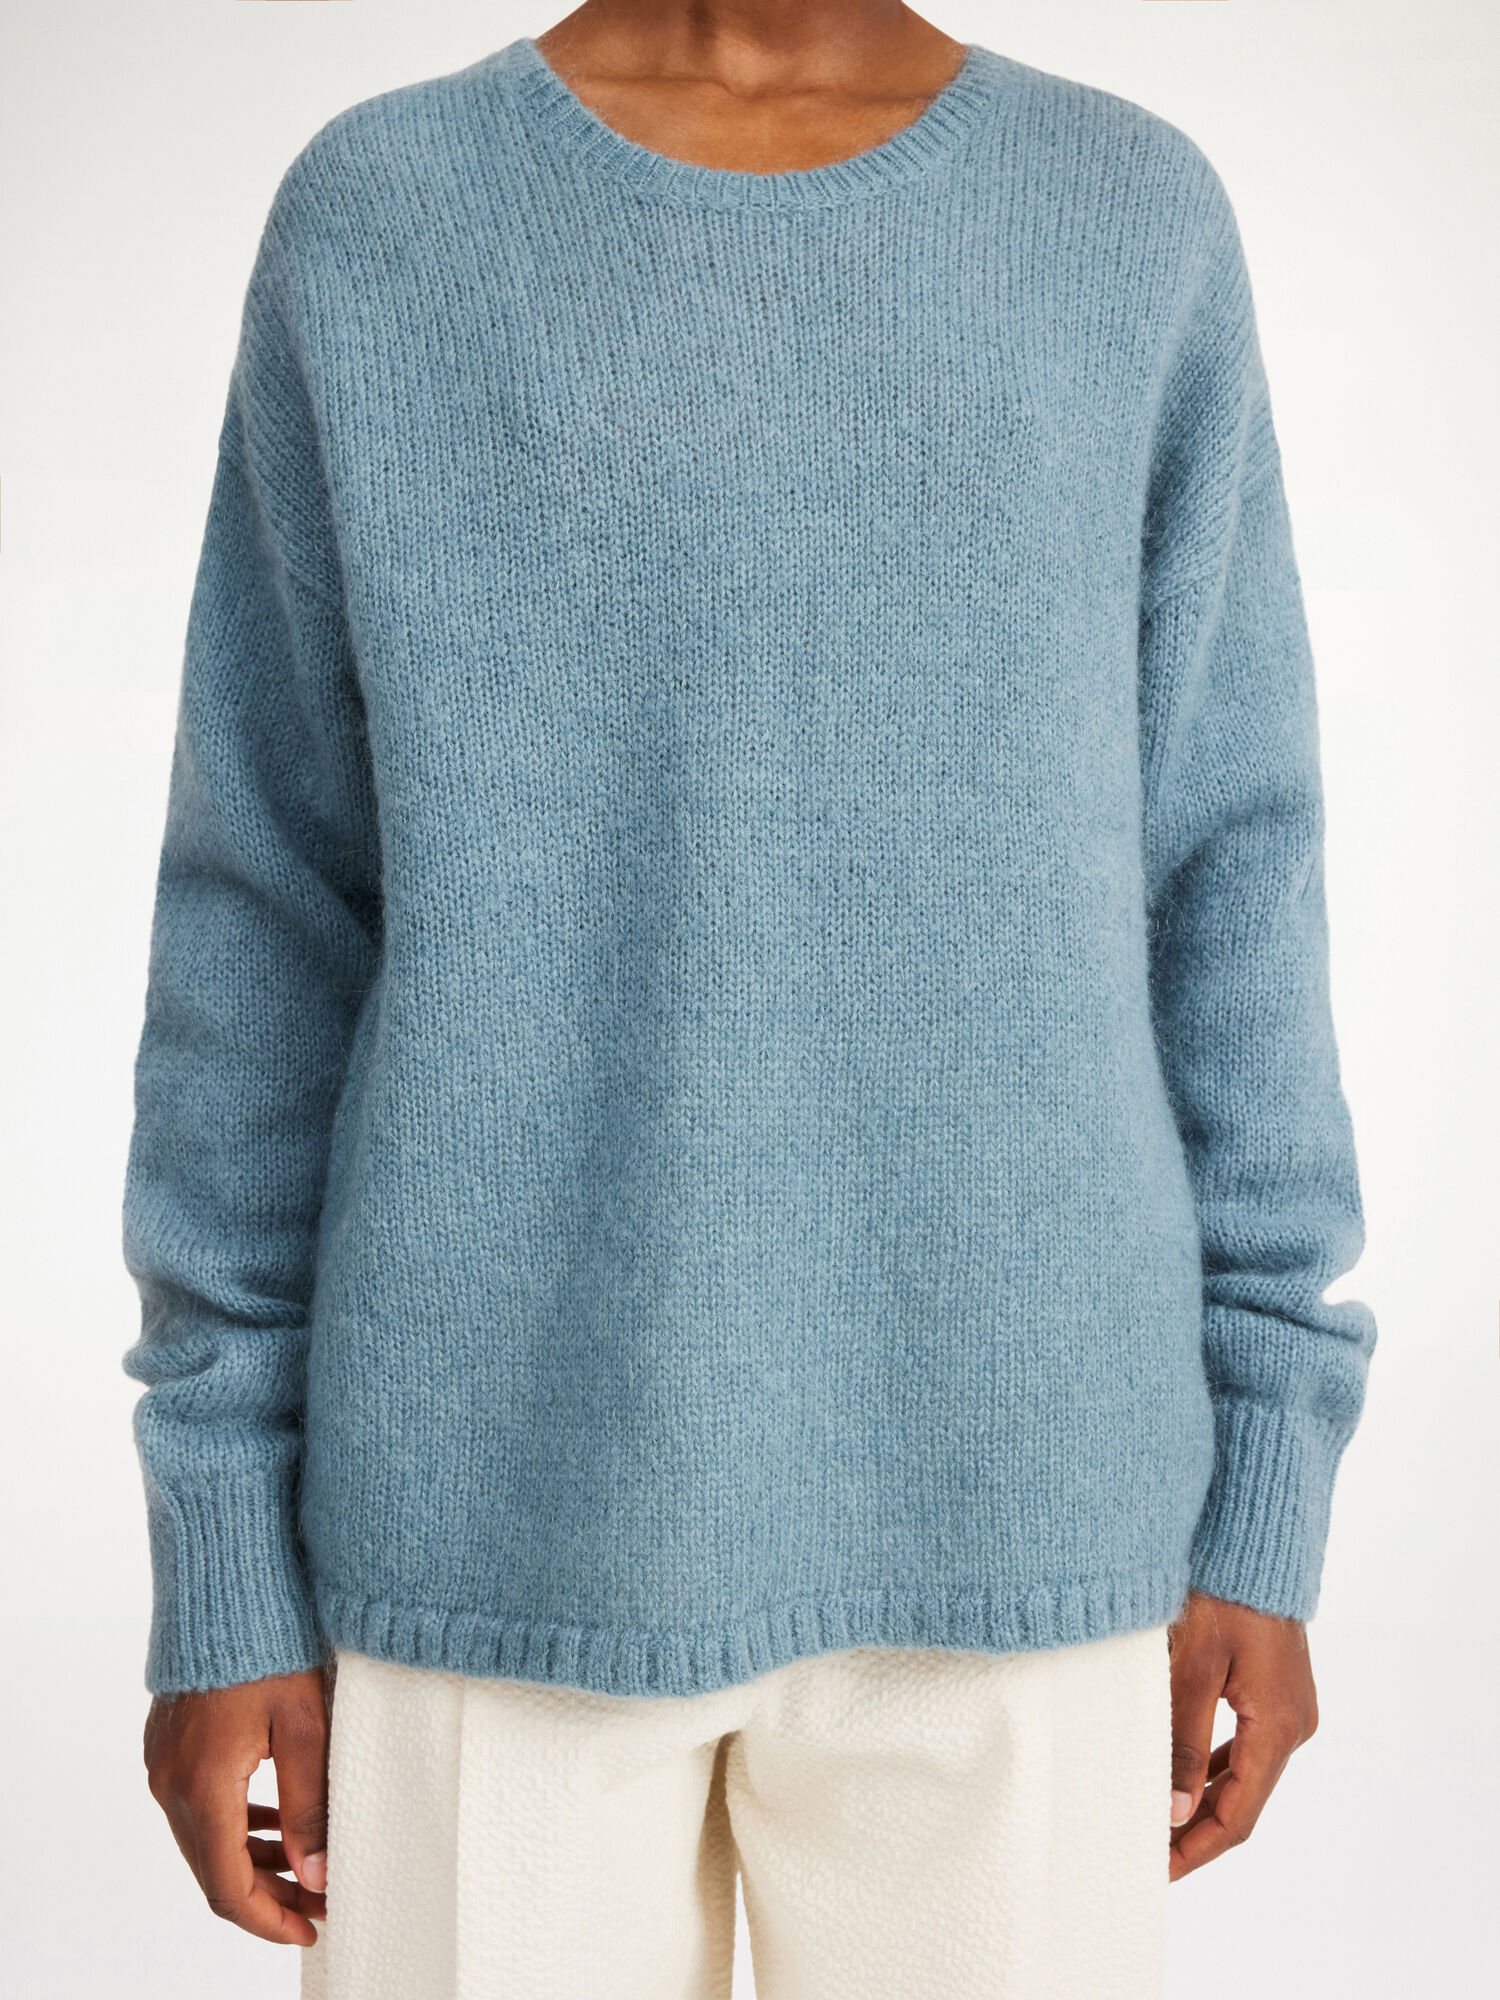 Briella mohair-blend sweater